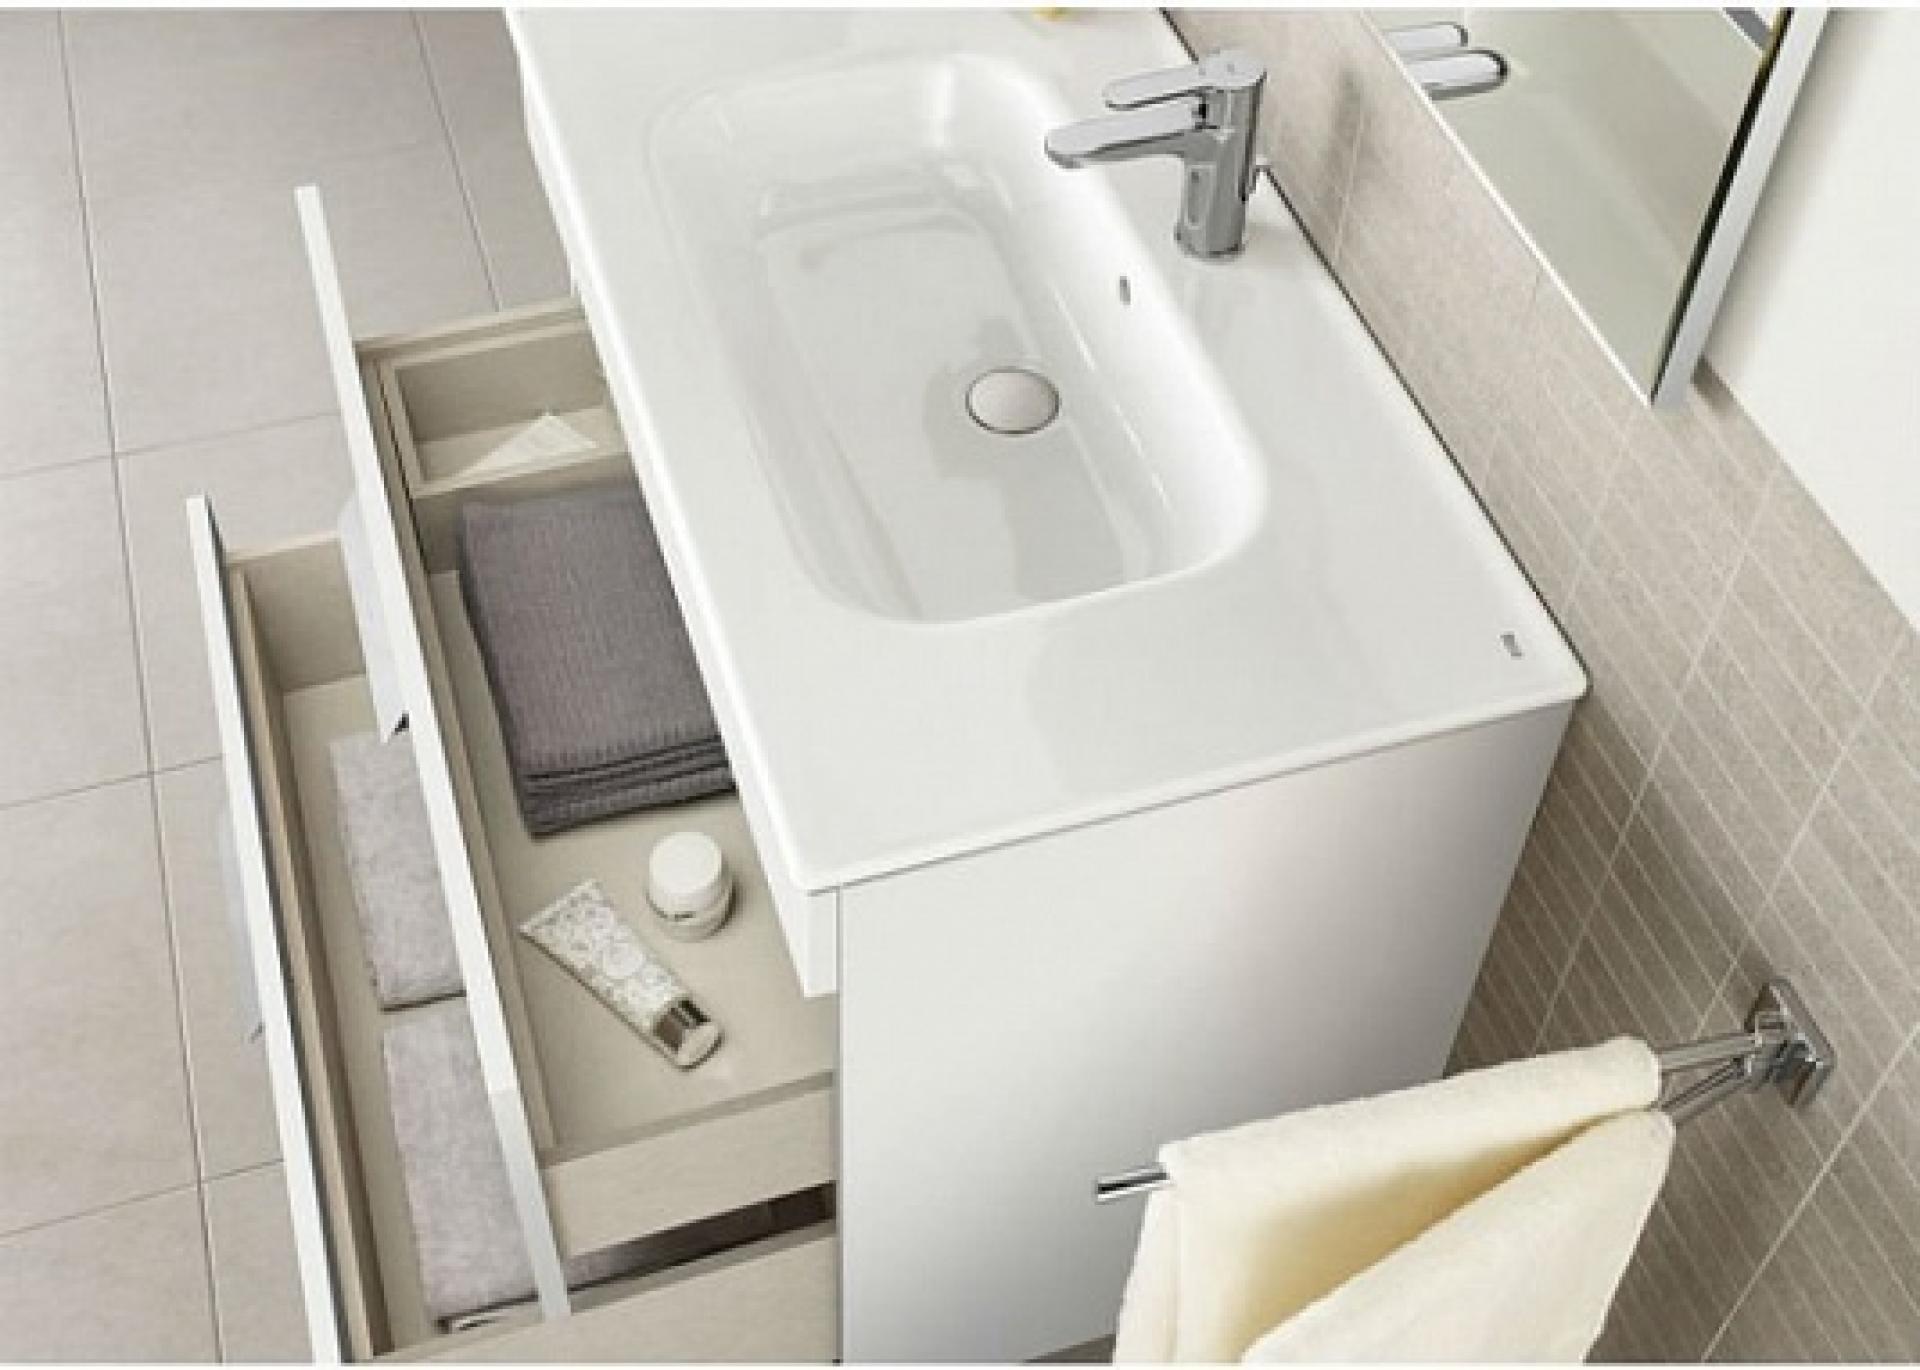 Фото: Комплект мебели для ванной Roca Debba 60 см Roca Debba белая (тумба+раковина+зеркало левое) Roca в каталоге